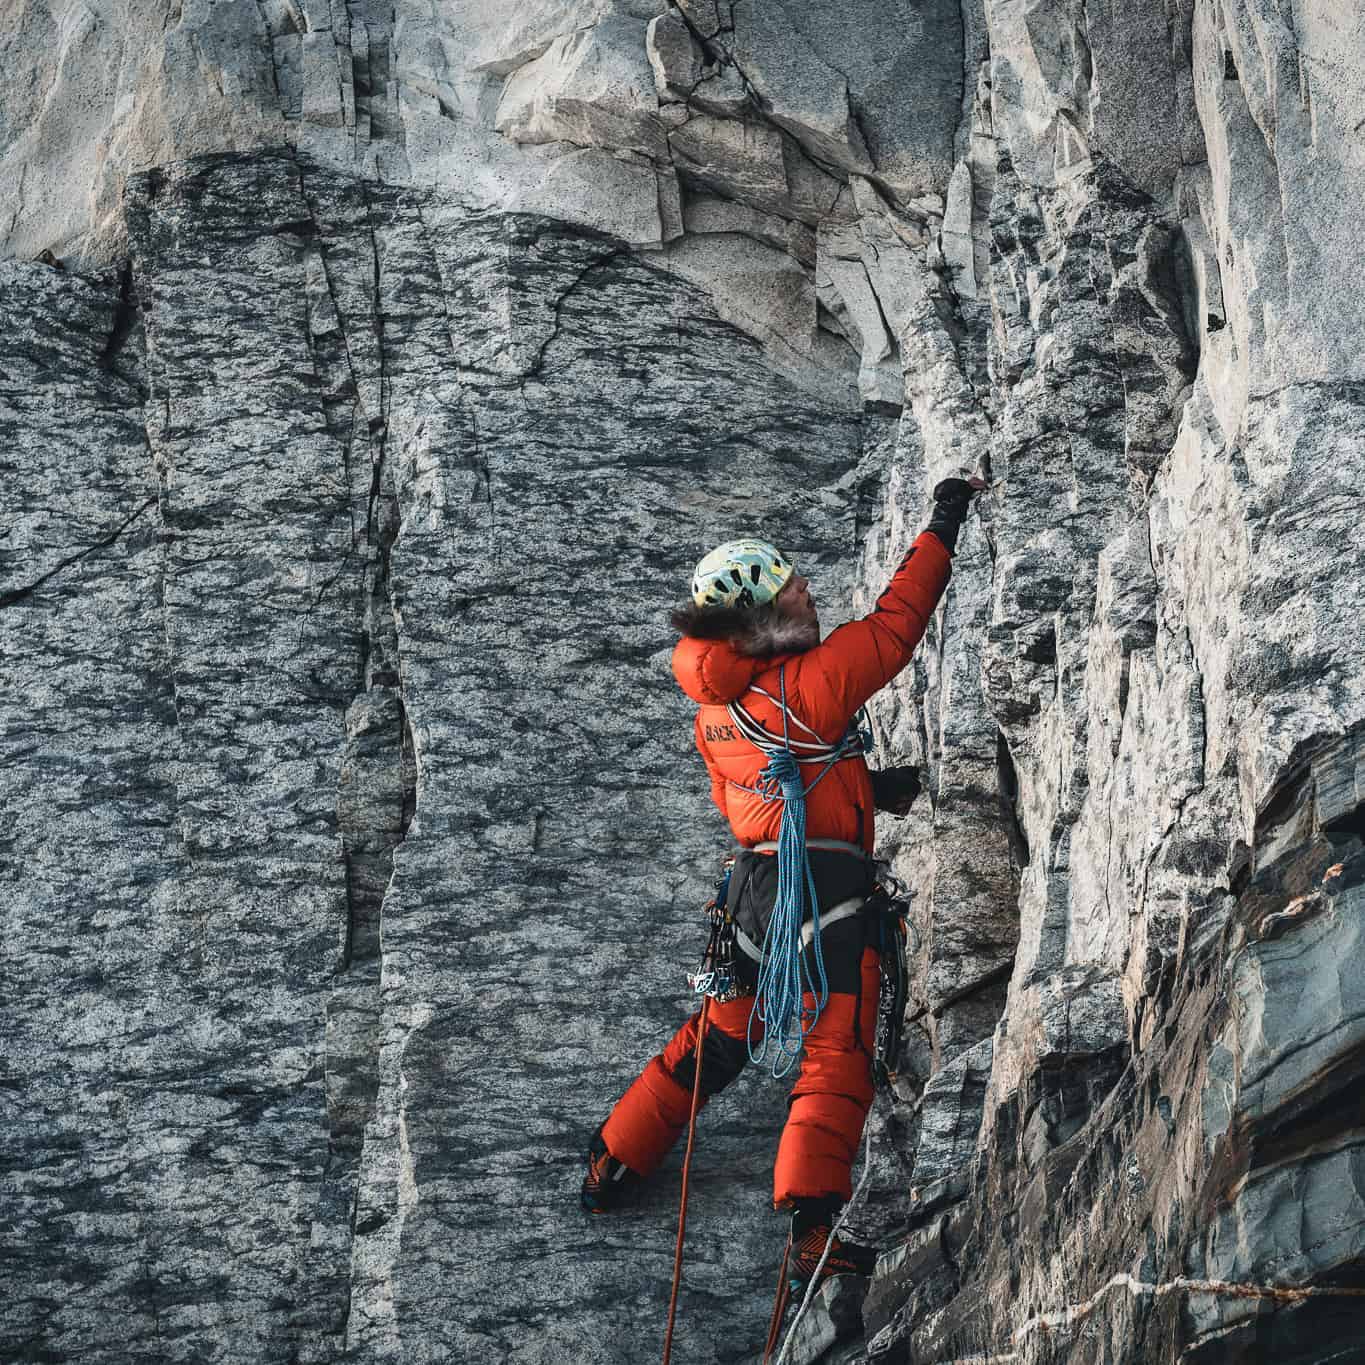 Jost Kobush on Winter 2019 Everest